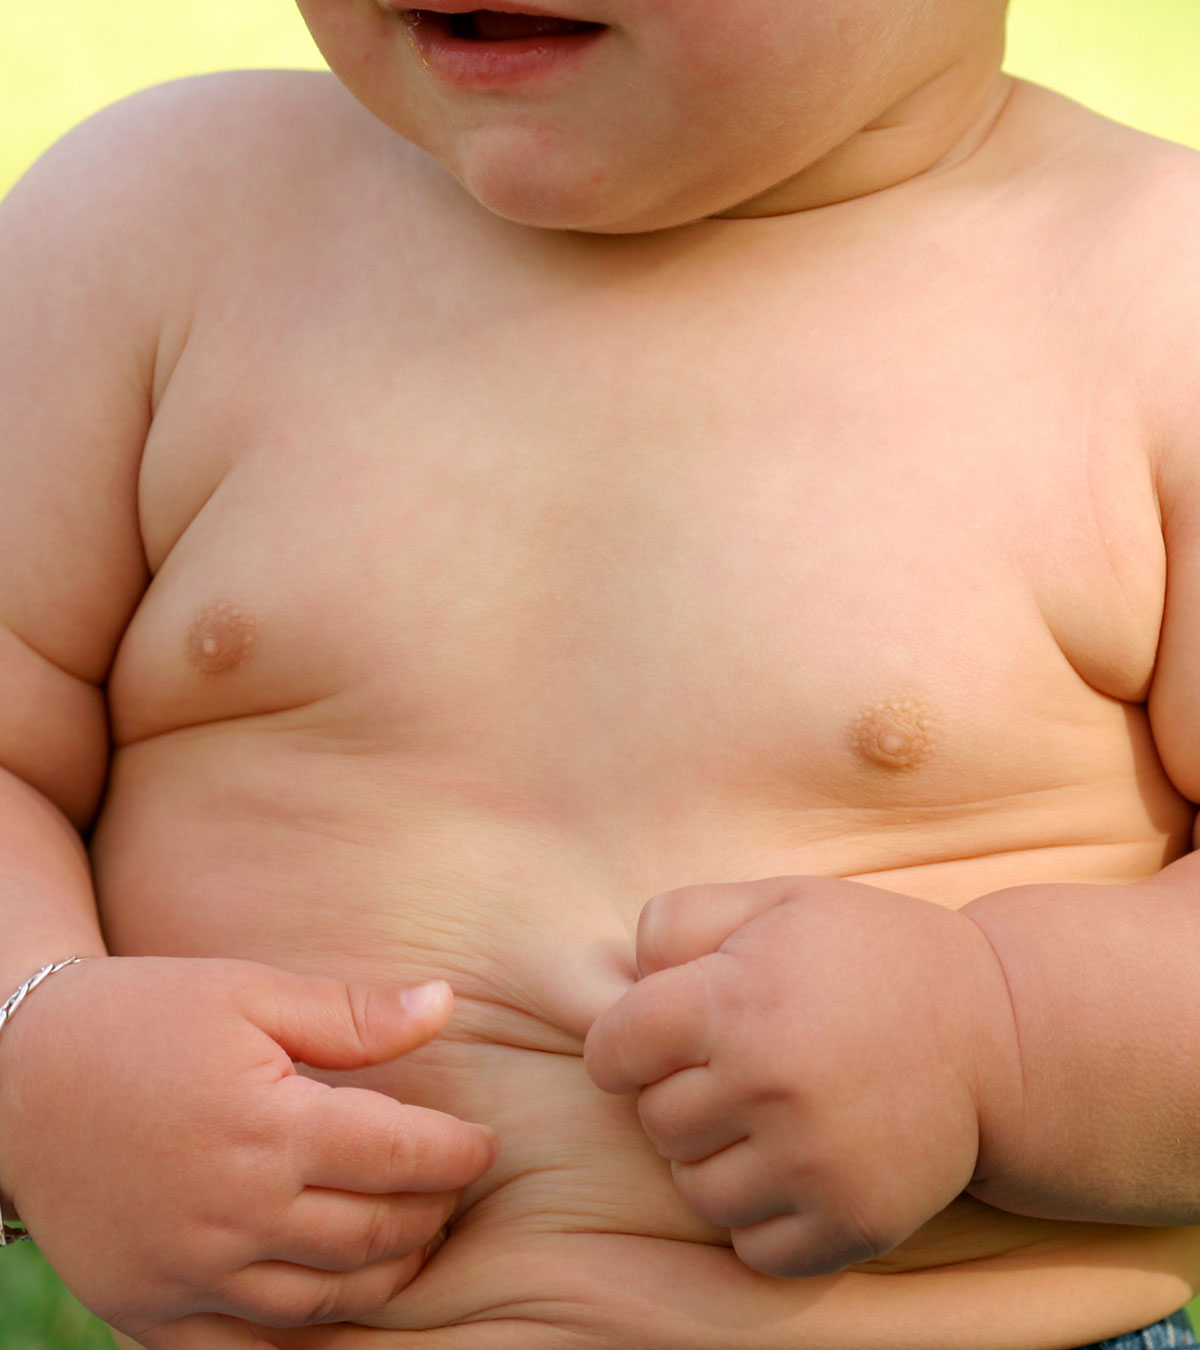 肥胖婴儿健康吗?何时需要关注?